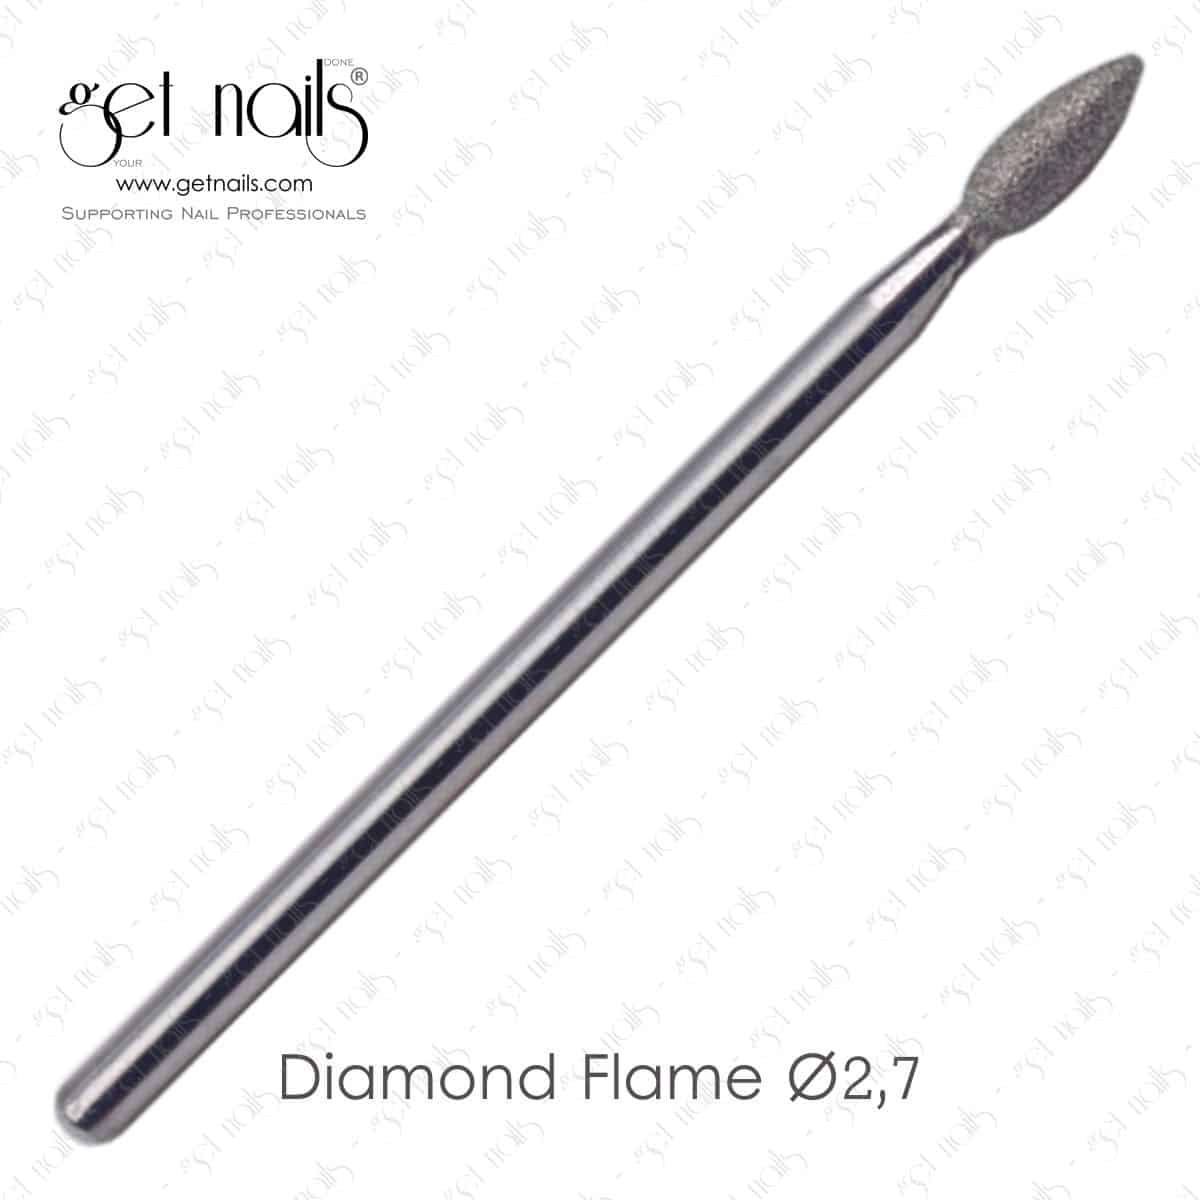 Get Nails Austria - Milling attachment Diamond Flame Ø2,7